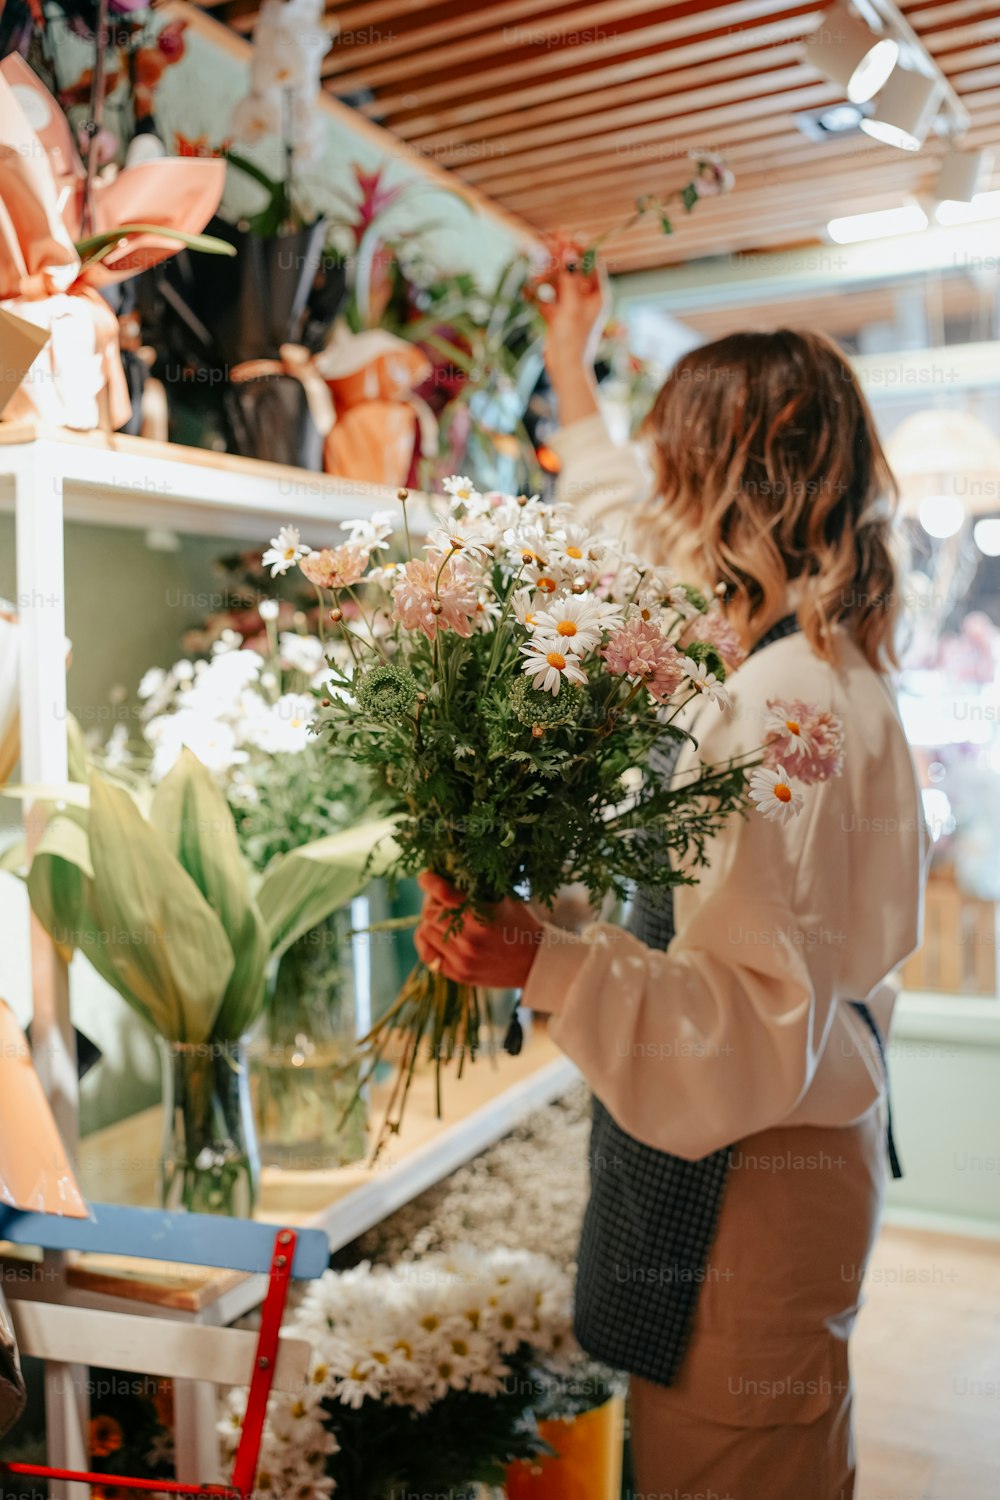 꽃집에서 꽃다발을 들고 있는 여자